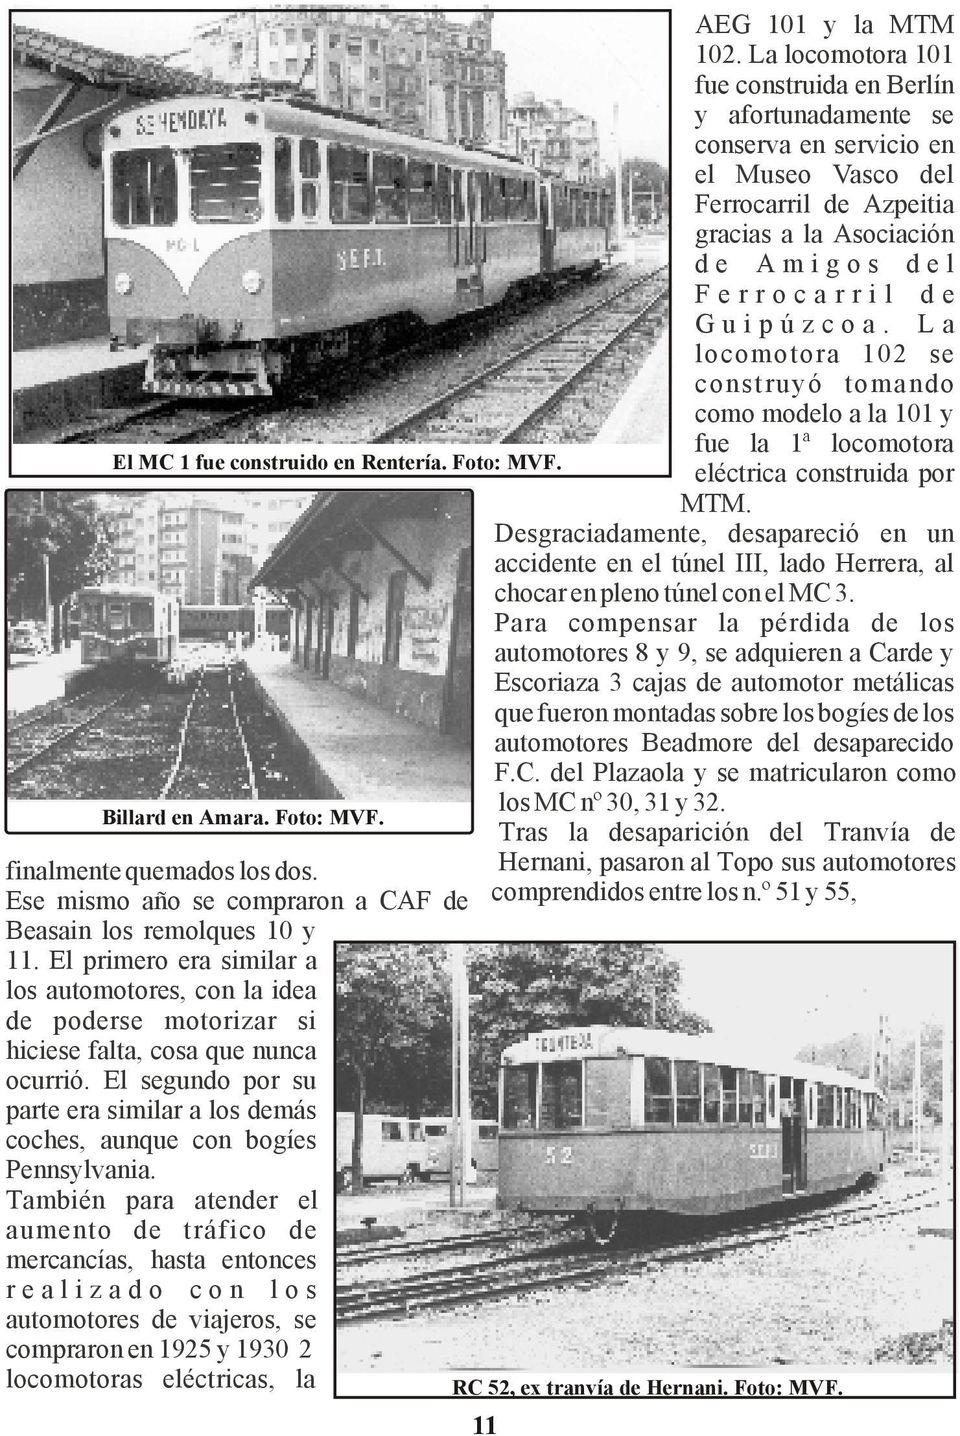 La locomotora 102 se construyó tomando como modelo a la 101 y fue la 1ª locomotora El MC 1 fue construido en Rentería. Foto: MVF. eléctrica construida por MTM.